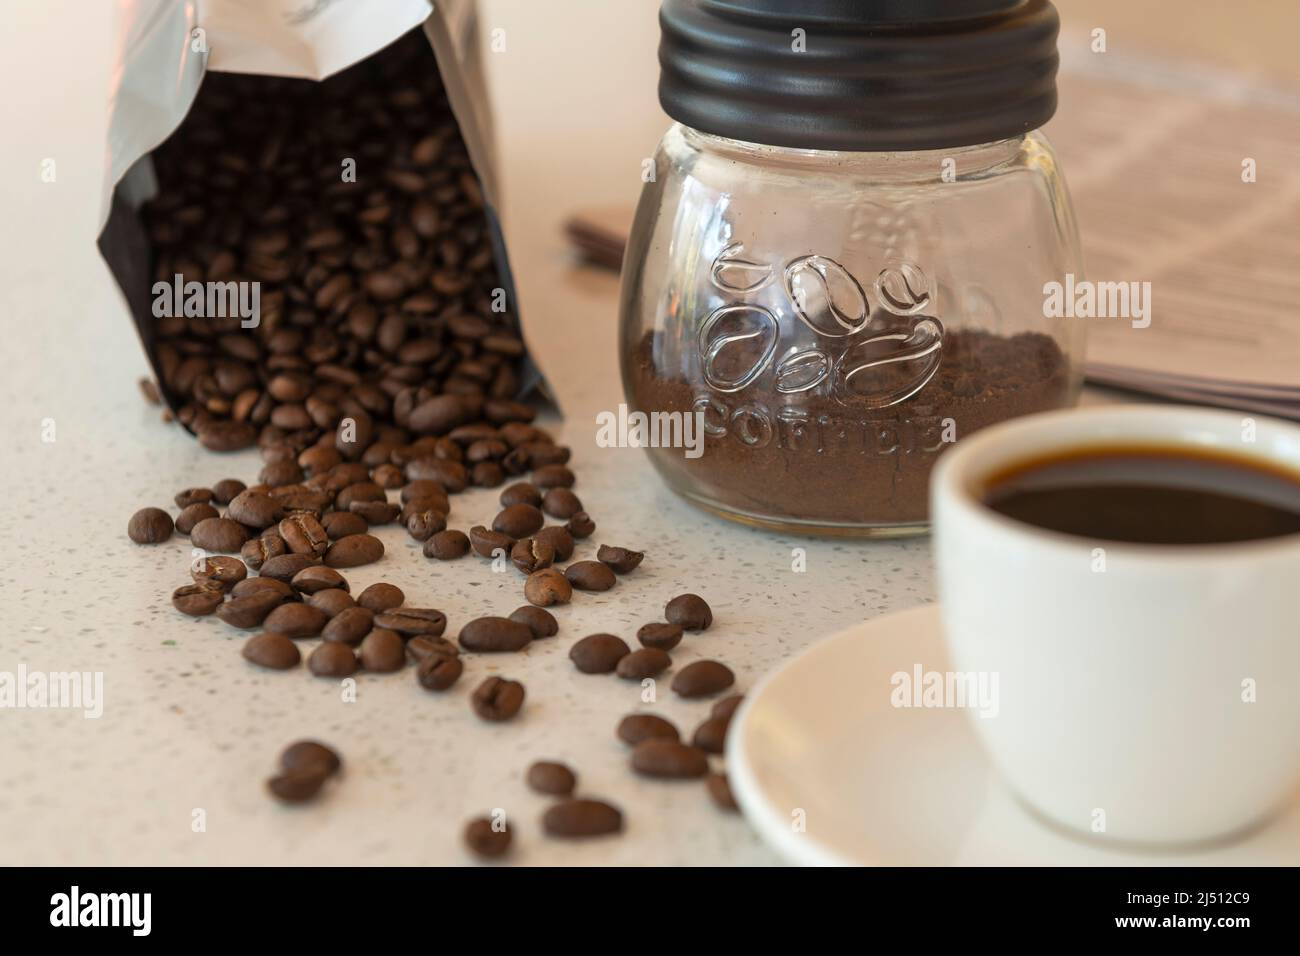 Los granos de café se derraman de su paquete en una mesa de trabajo con una taza de café y café molido cerca. Foto de stock